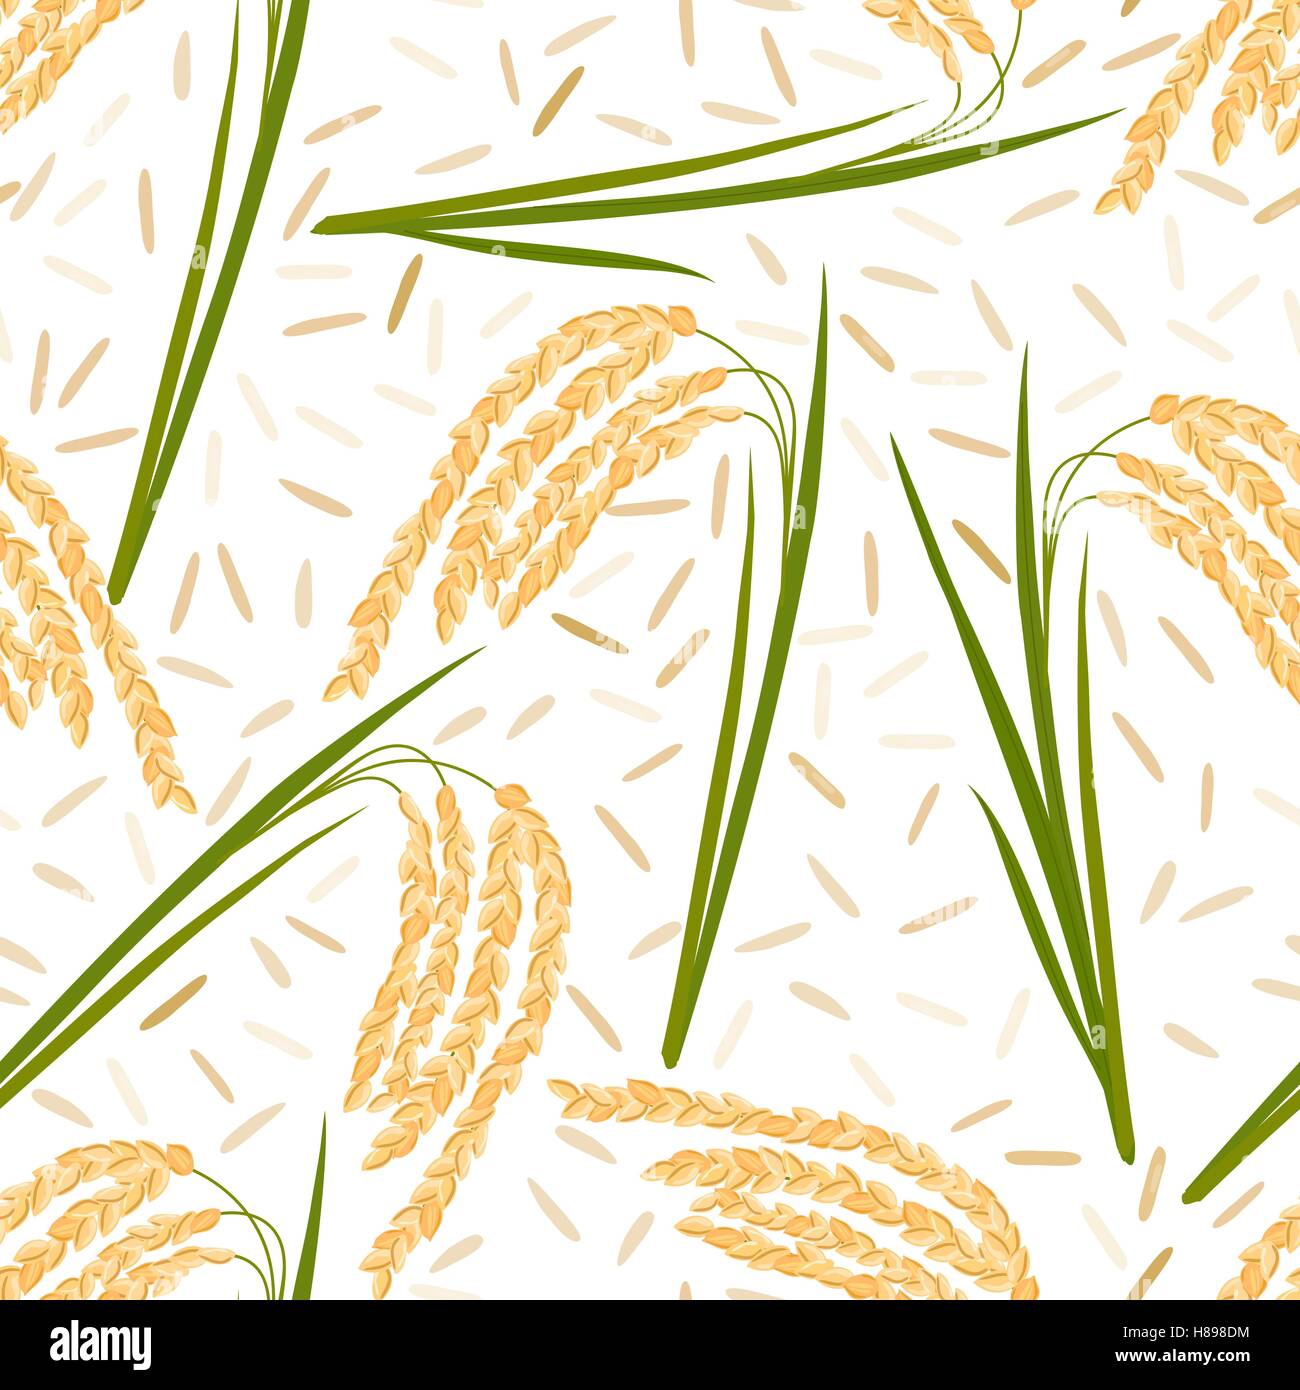 Modèle transparent avec des feuilles de riz, graines et épillets sur un fond blanc. Vector illustration. Eps 10. Illustration de Vecteur